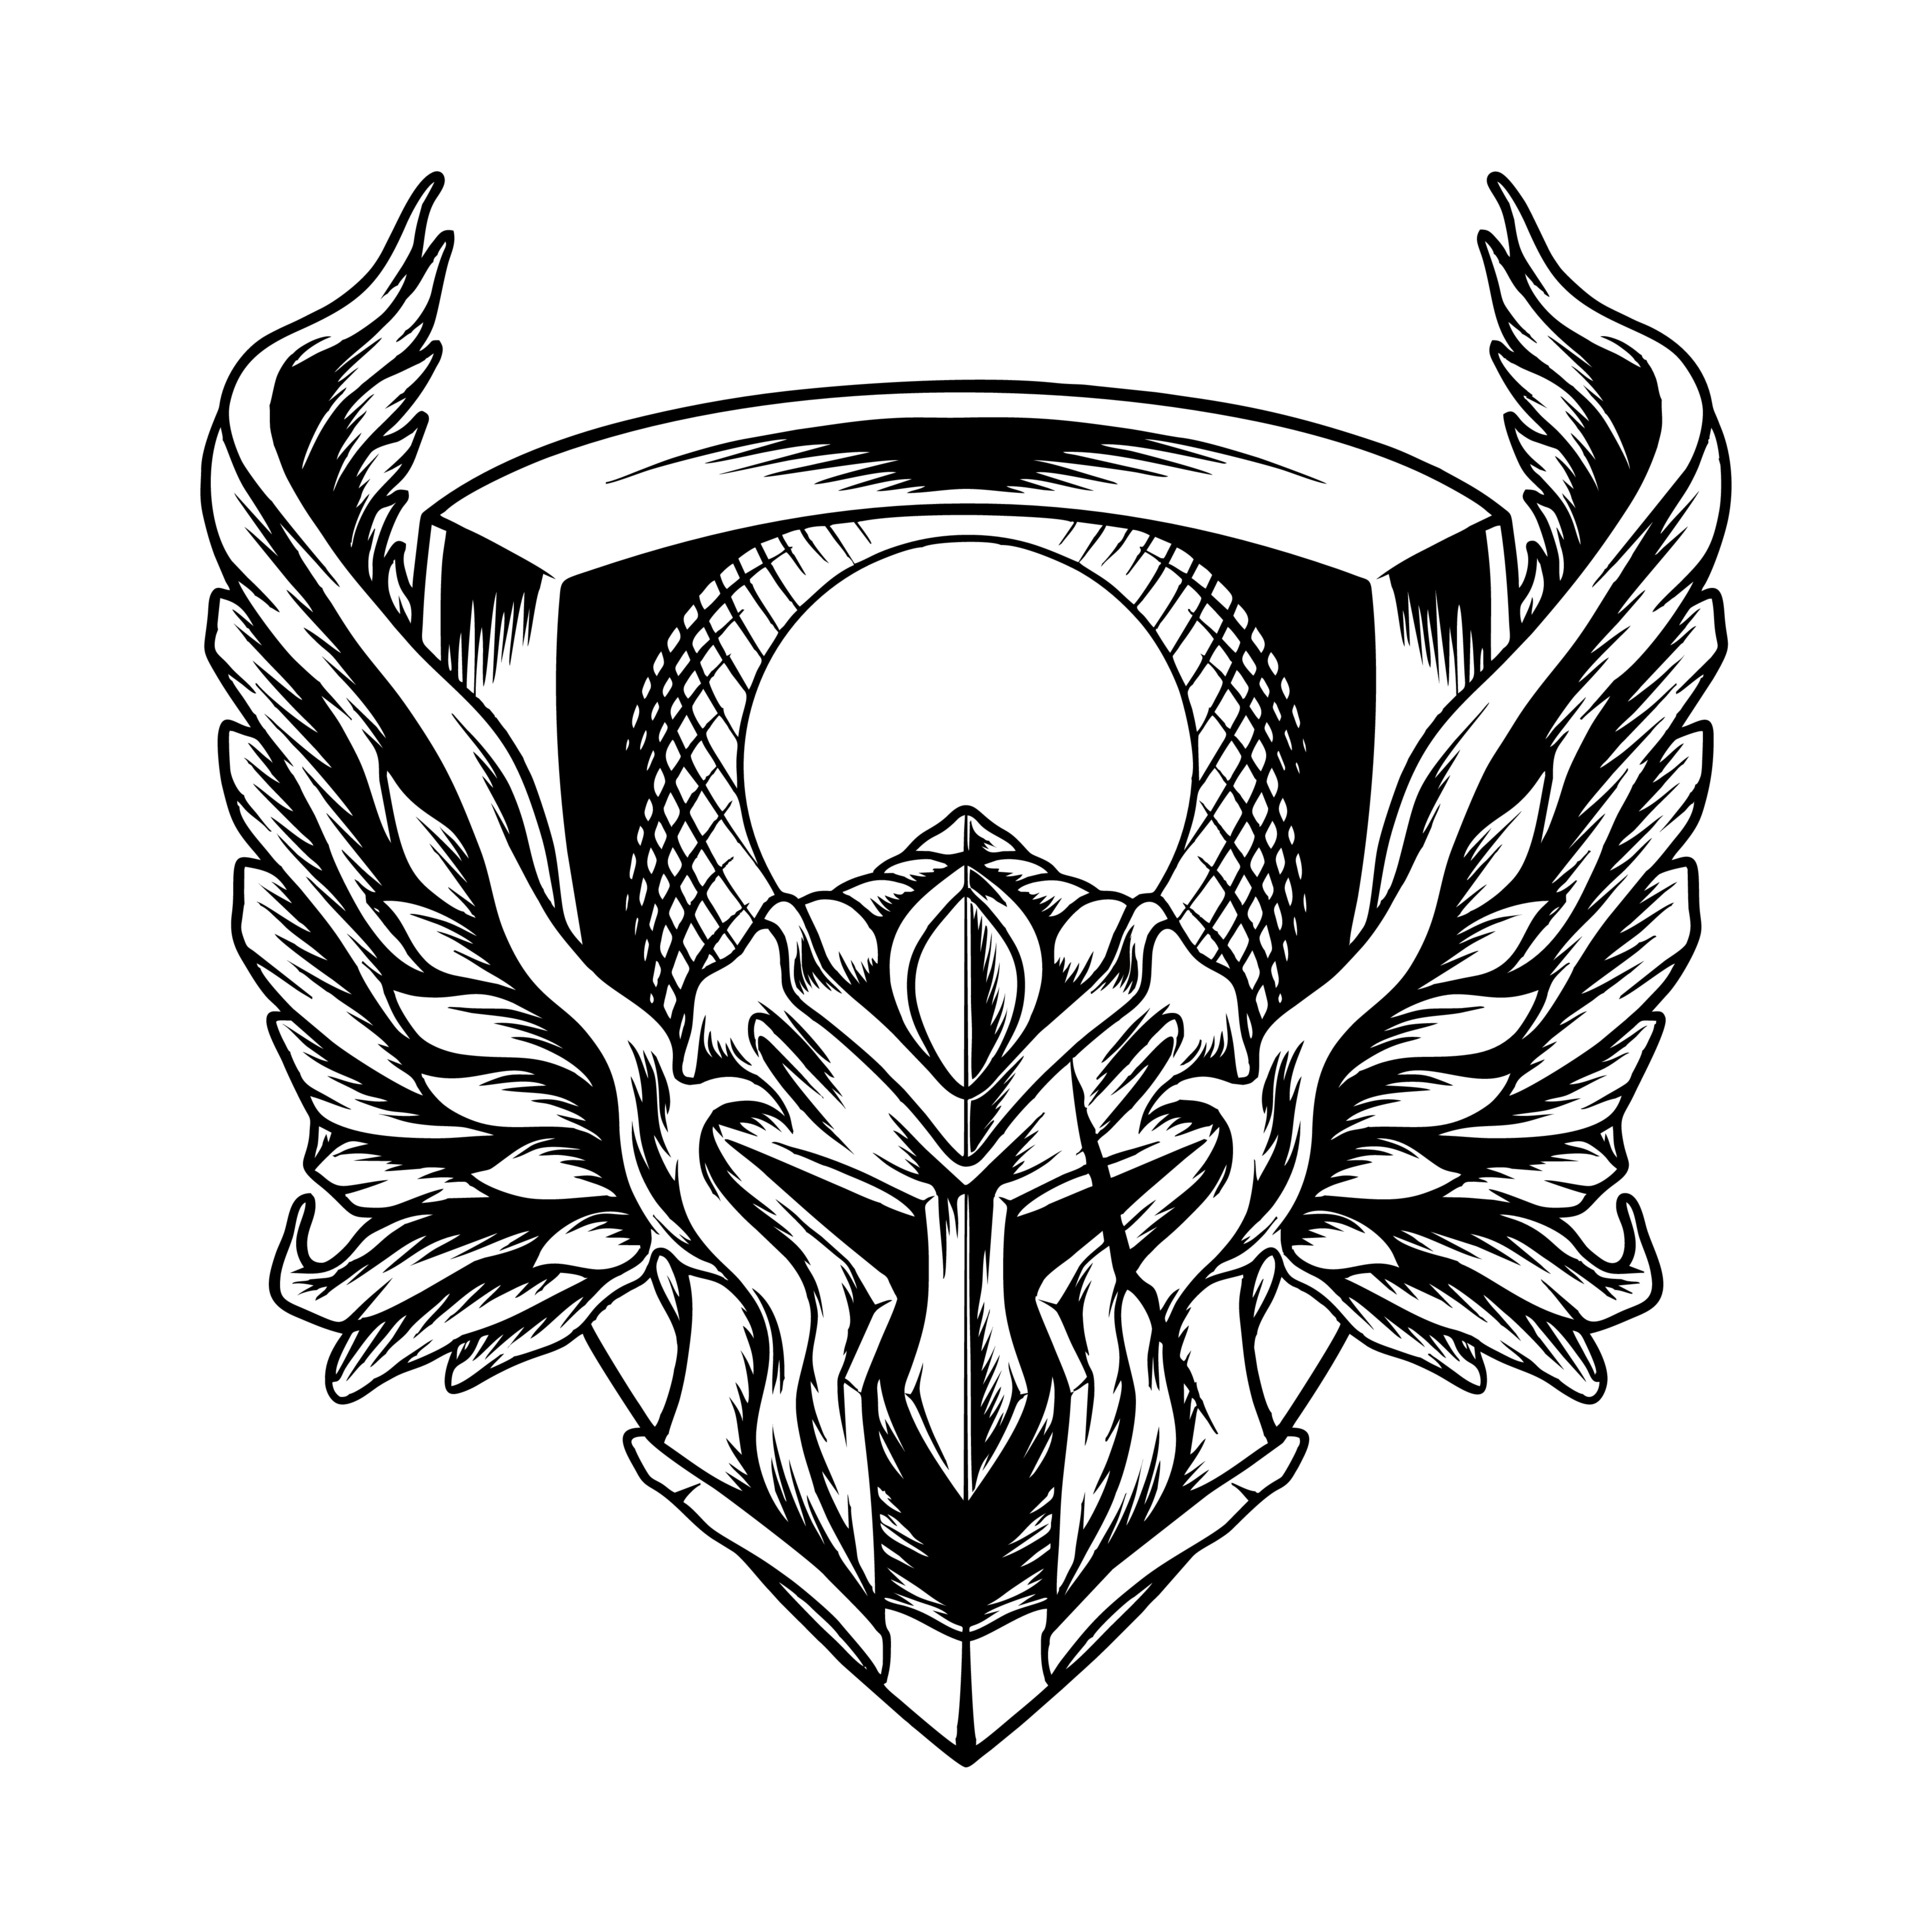 Spartaanse helm met vleugels silhouet 3286899 Vectorkunst bij Vecteezy